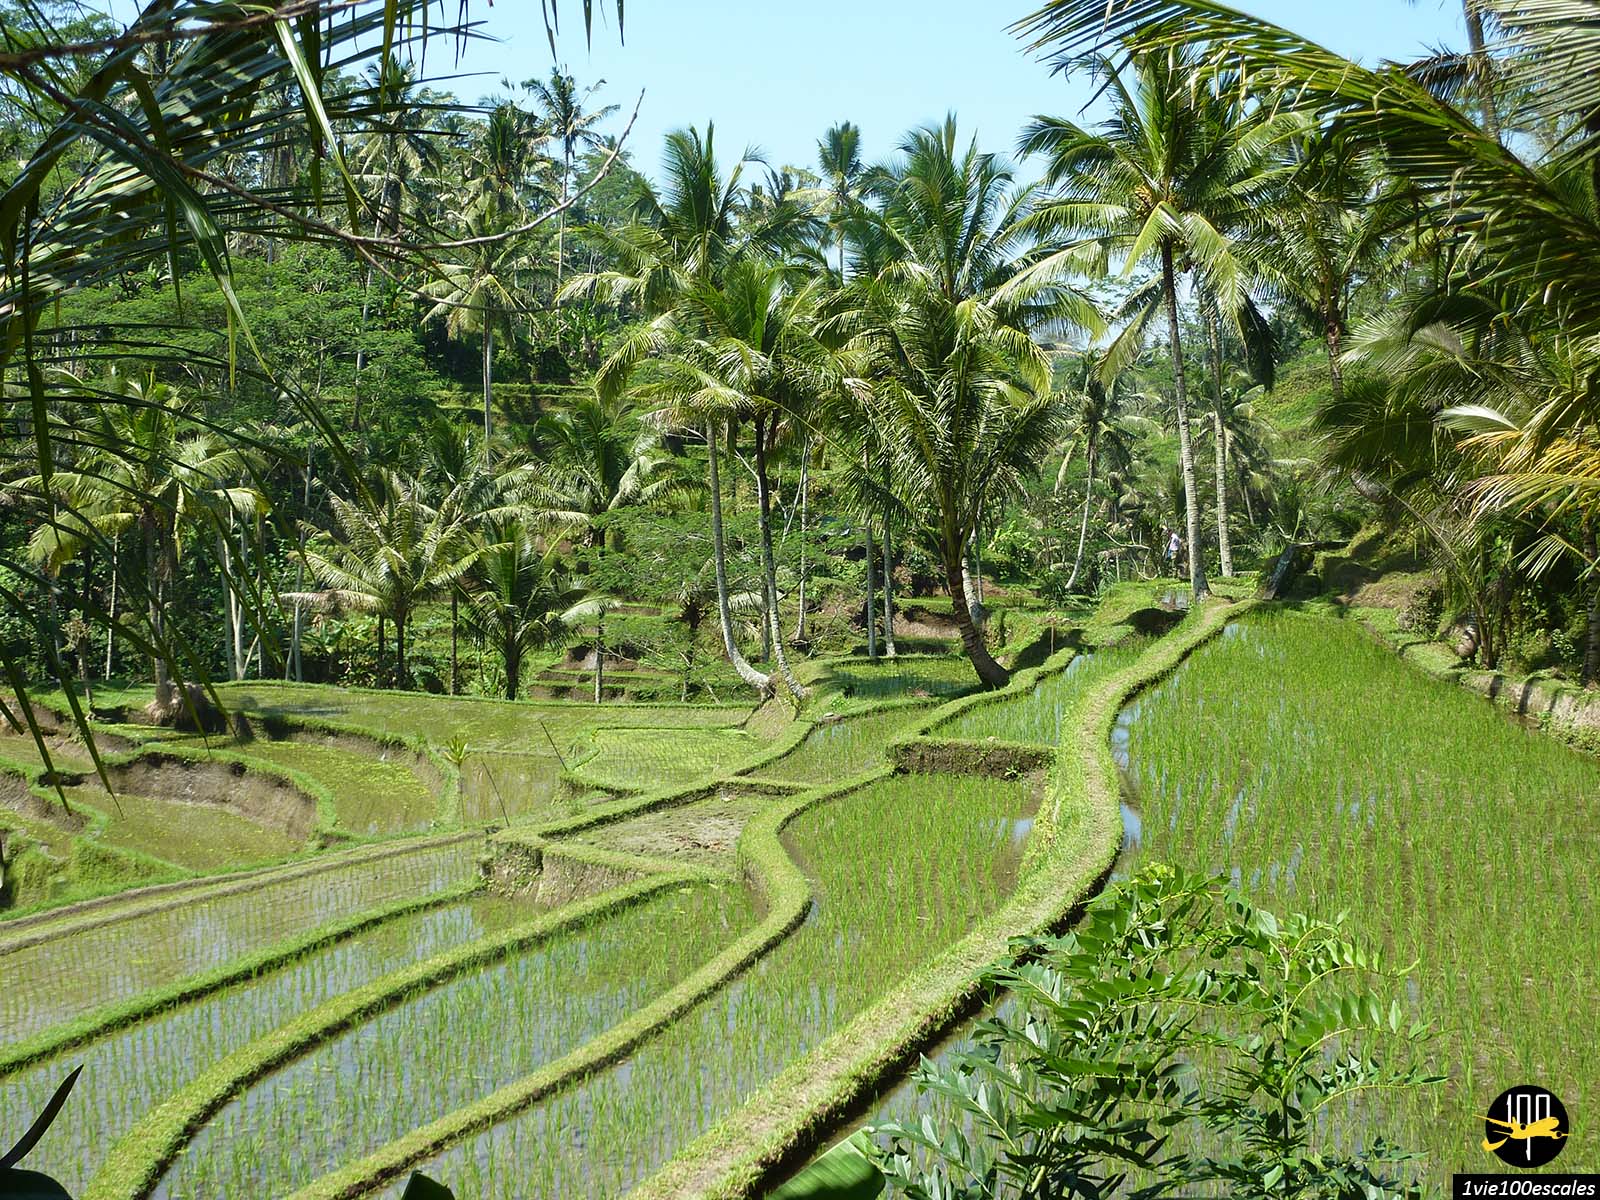 Dans la région d'Ubud, où bat le cœur artistique et culturel de Bali, les rizières ondulent en terrasses à flanc de collines